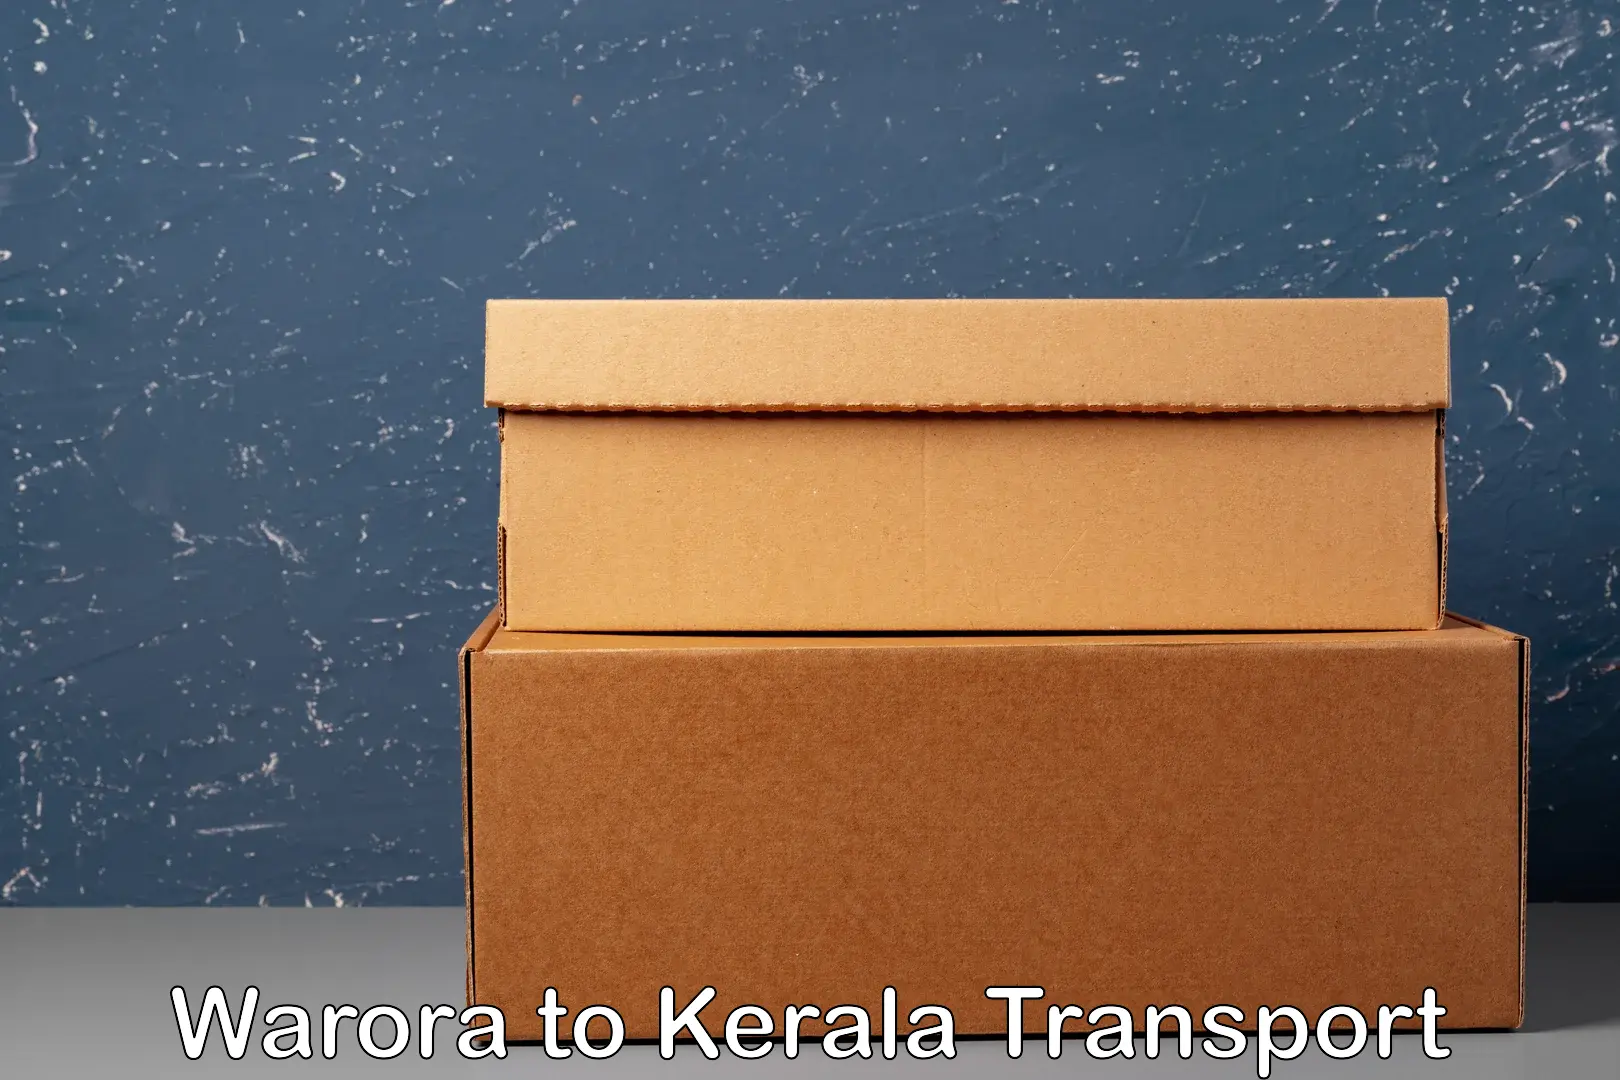 Express transport services Warora to Kakkayam